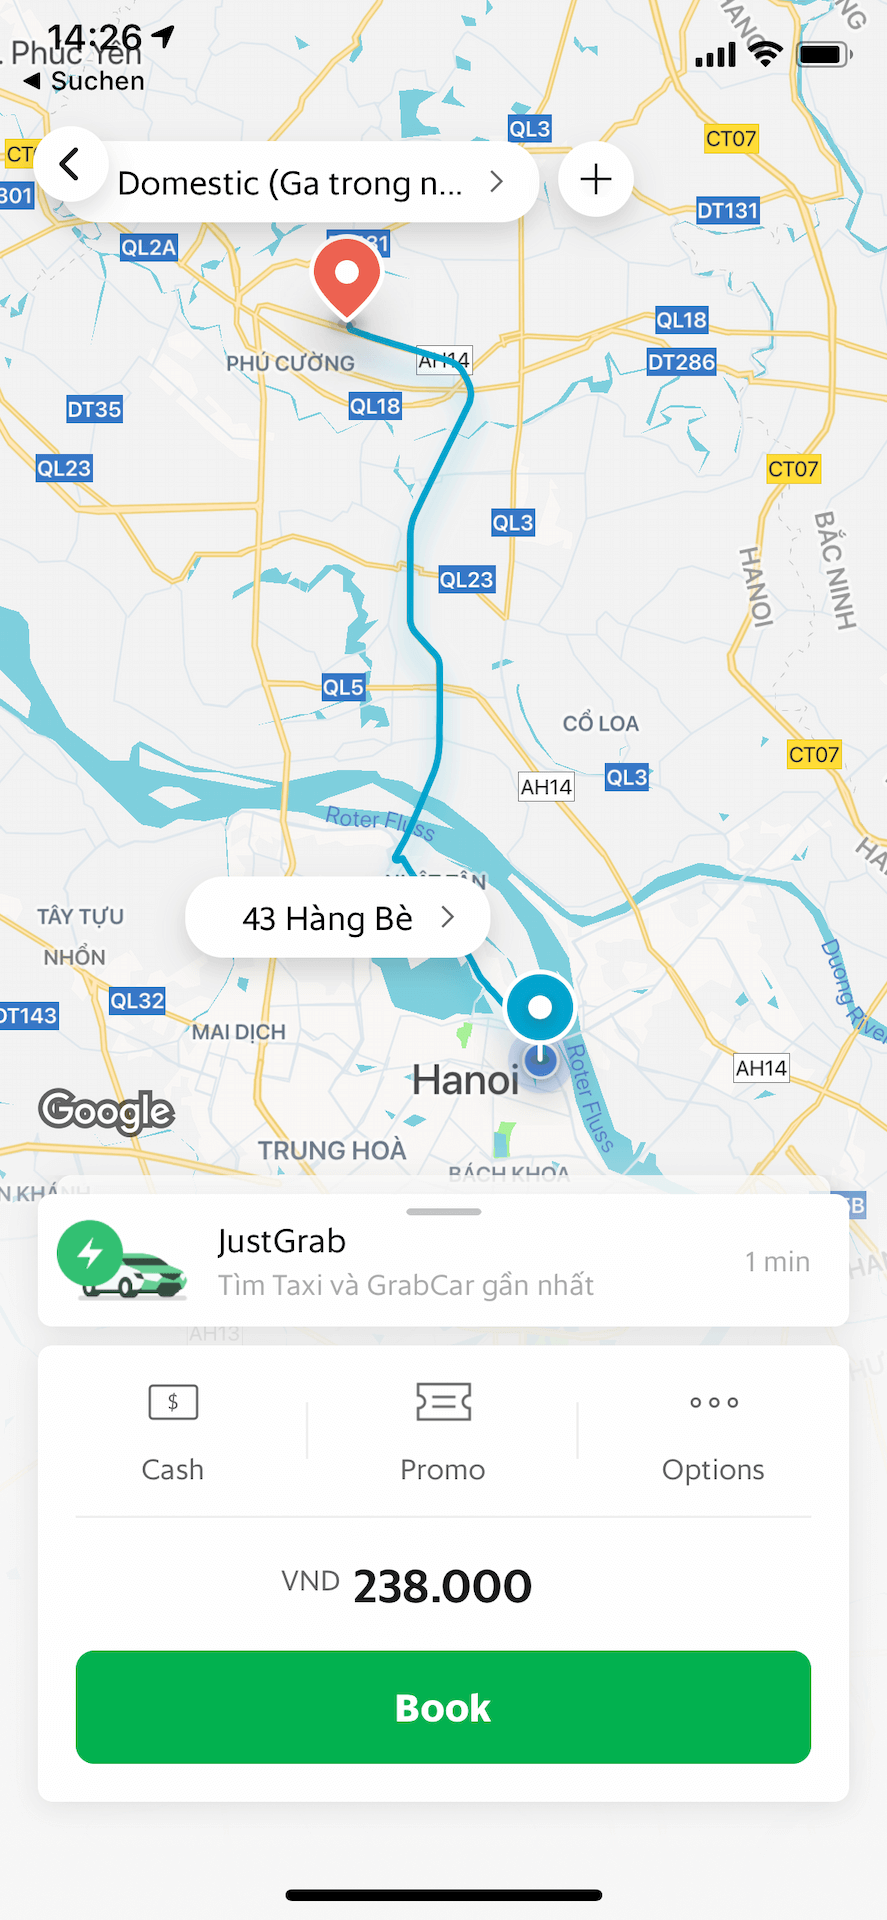 Grab Hanoi zum Flughafen